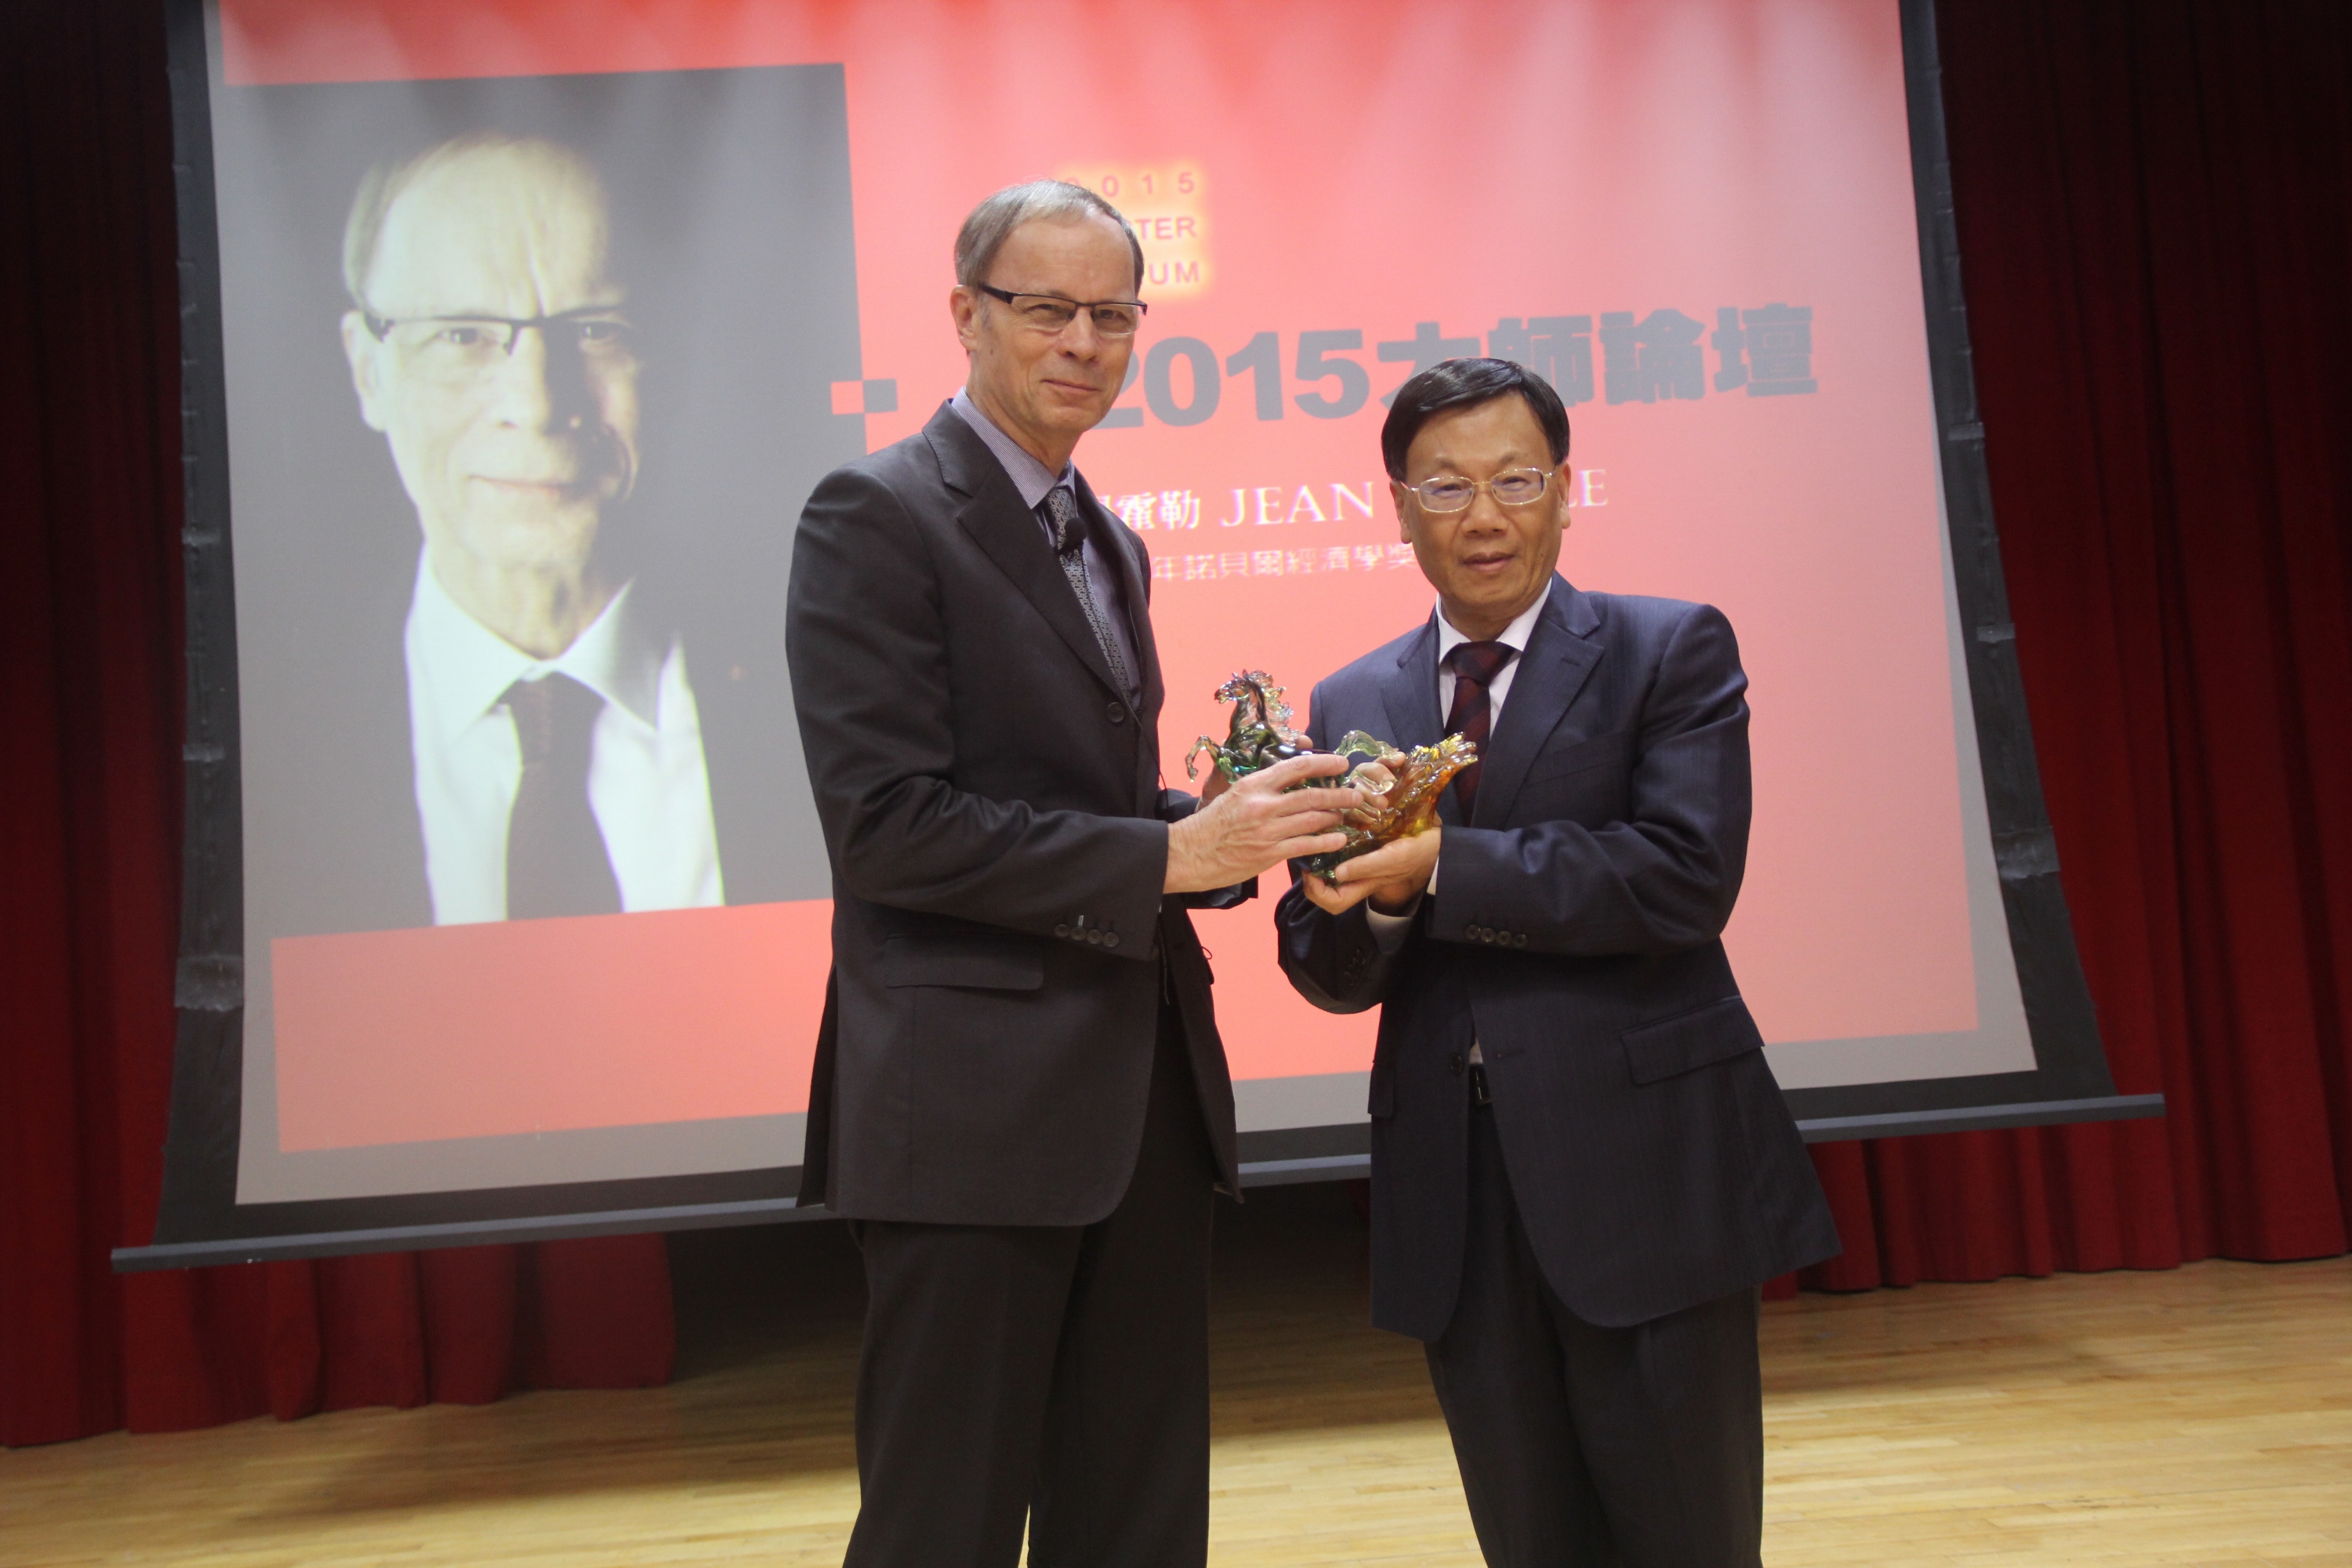 亞洲大學校長蔡進發致贈紀念品予諾貝爾經濟學獎得主提霍勒。